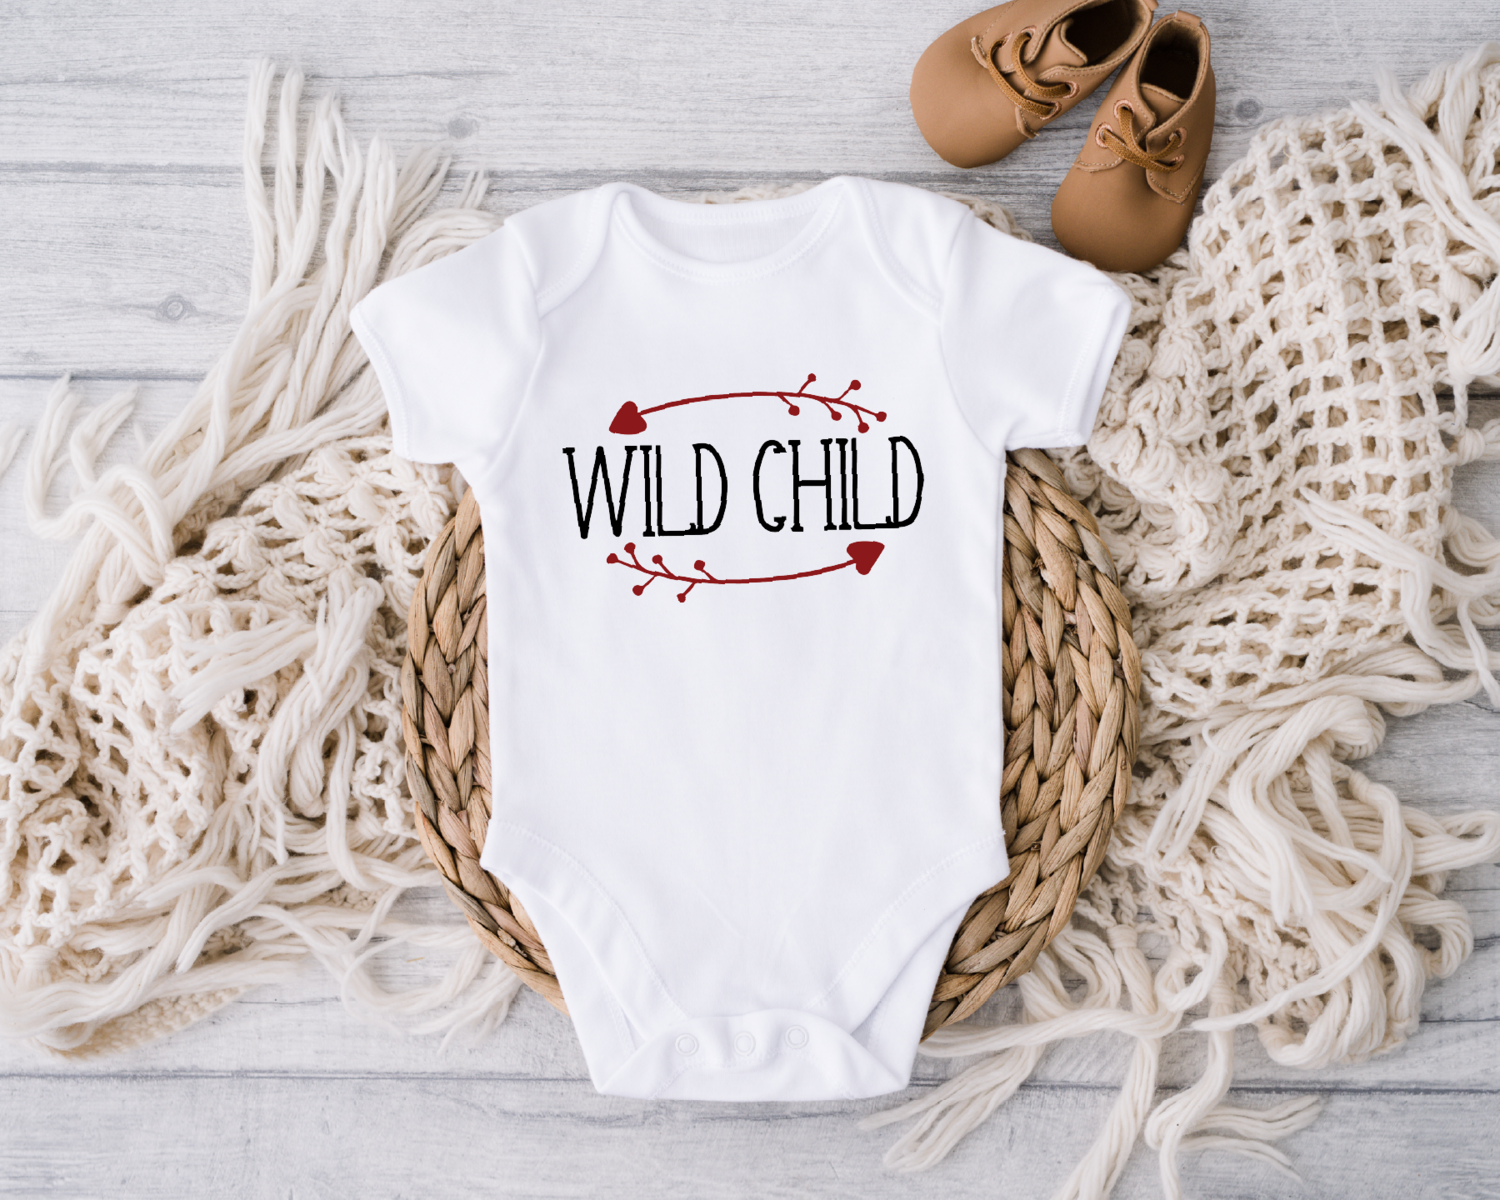 Wild Child Toddler Shirt, Western Kids Onesie, Wild West Baby Bodysuits